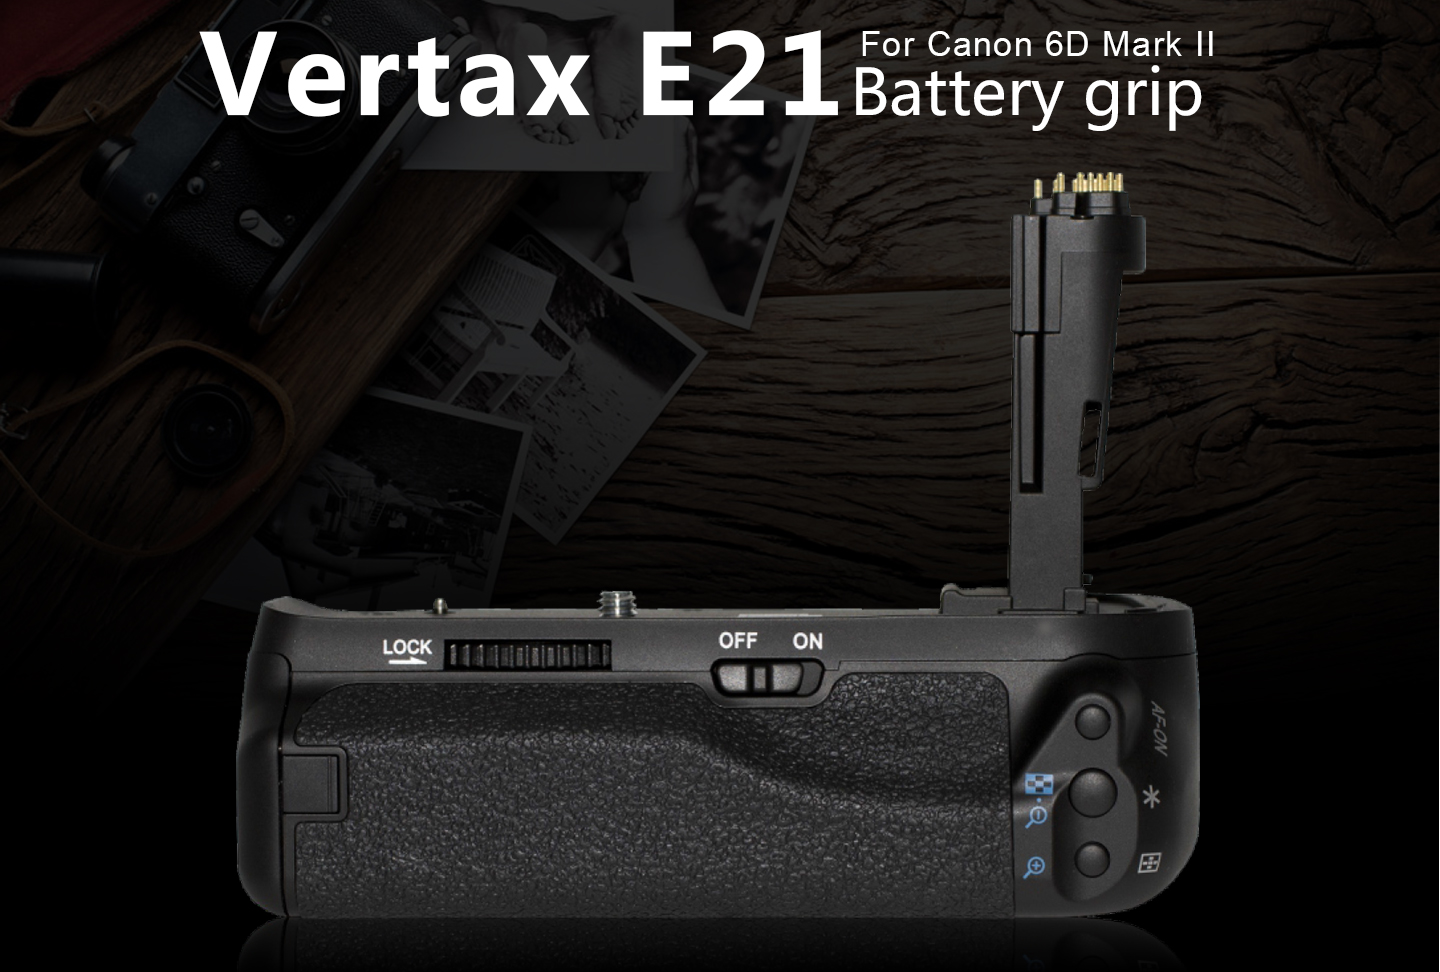 Vertax E21 Battery grip For Canon 6D Mark II